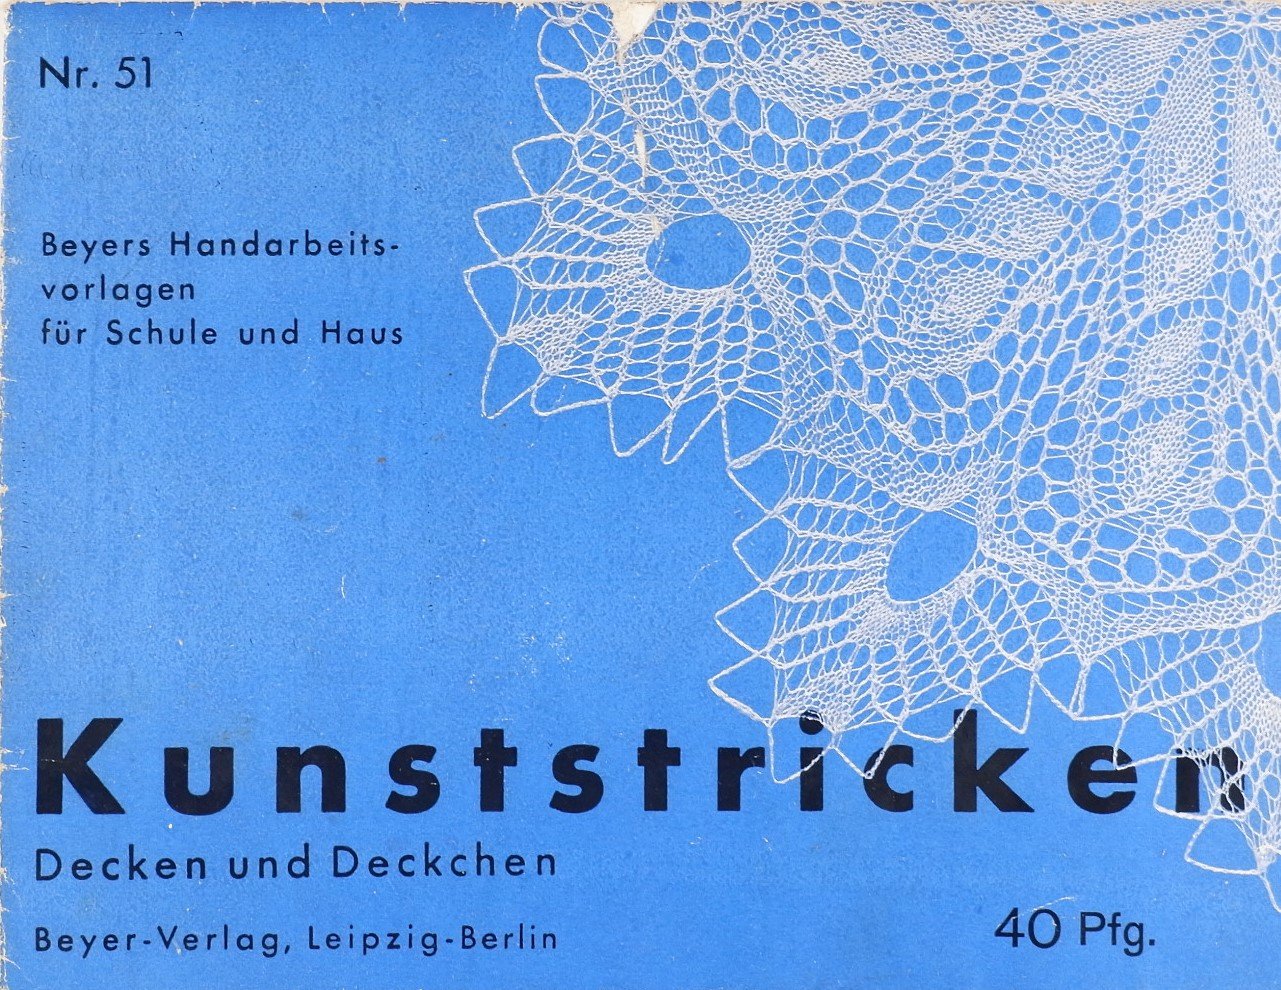 Kunststricken – Decken und Deckchen (Volkskunde- und Freilichtmuseum Roscheider Hof RR-F)